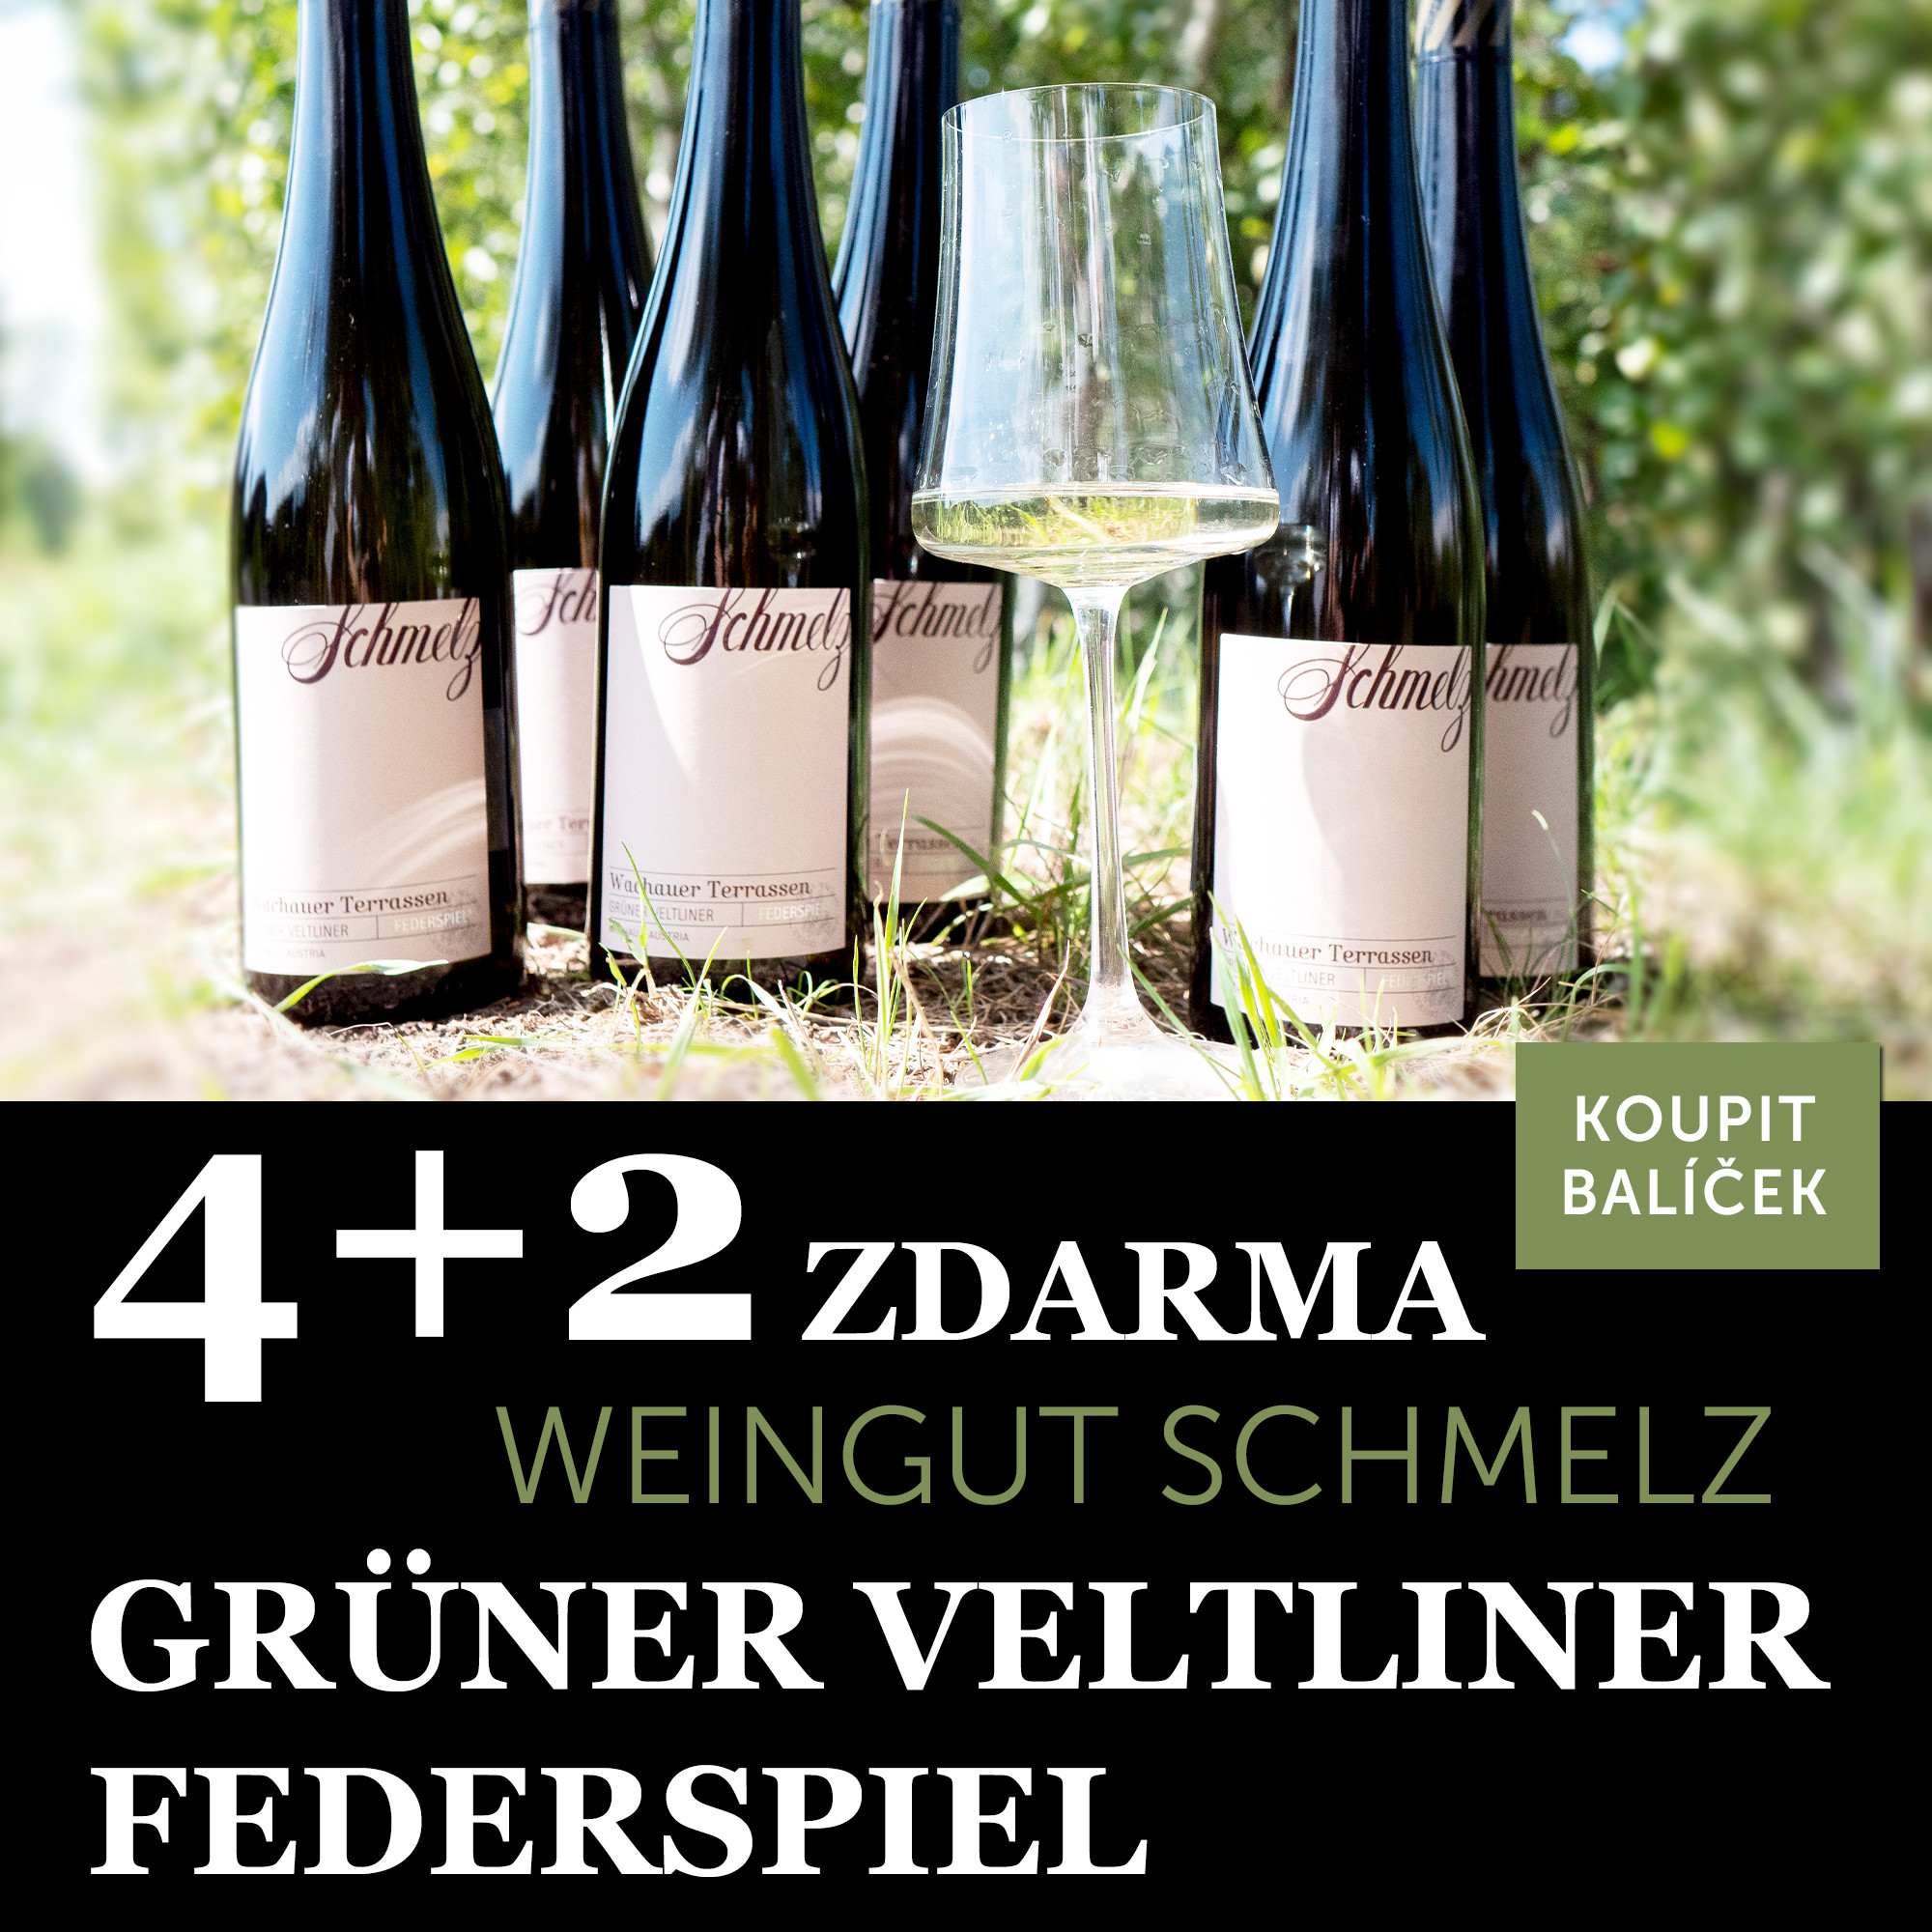 Víno měsíce září - Schmelz Grüner Veltliner Federspiel 4+2 - UKONČENO